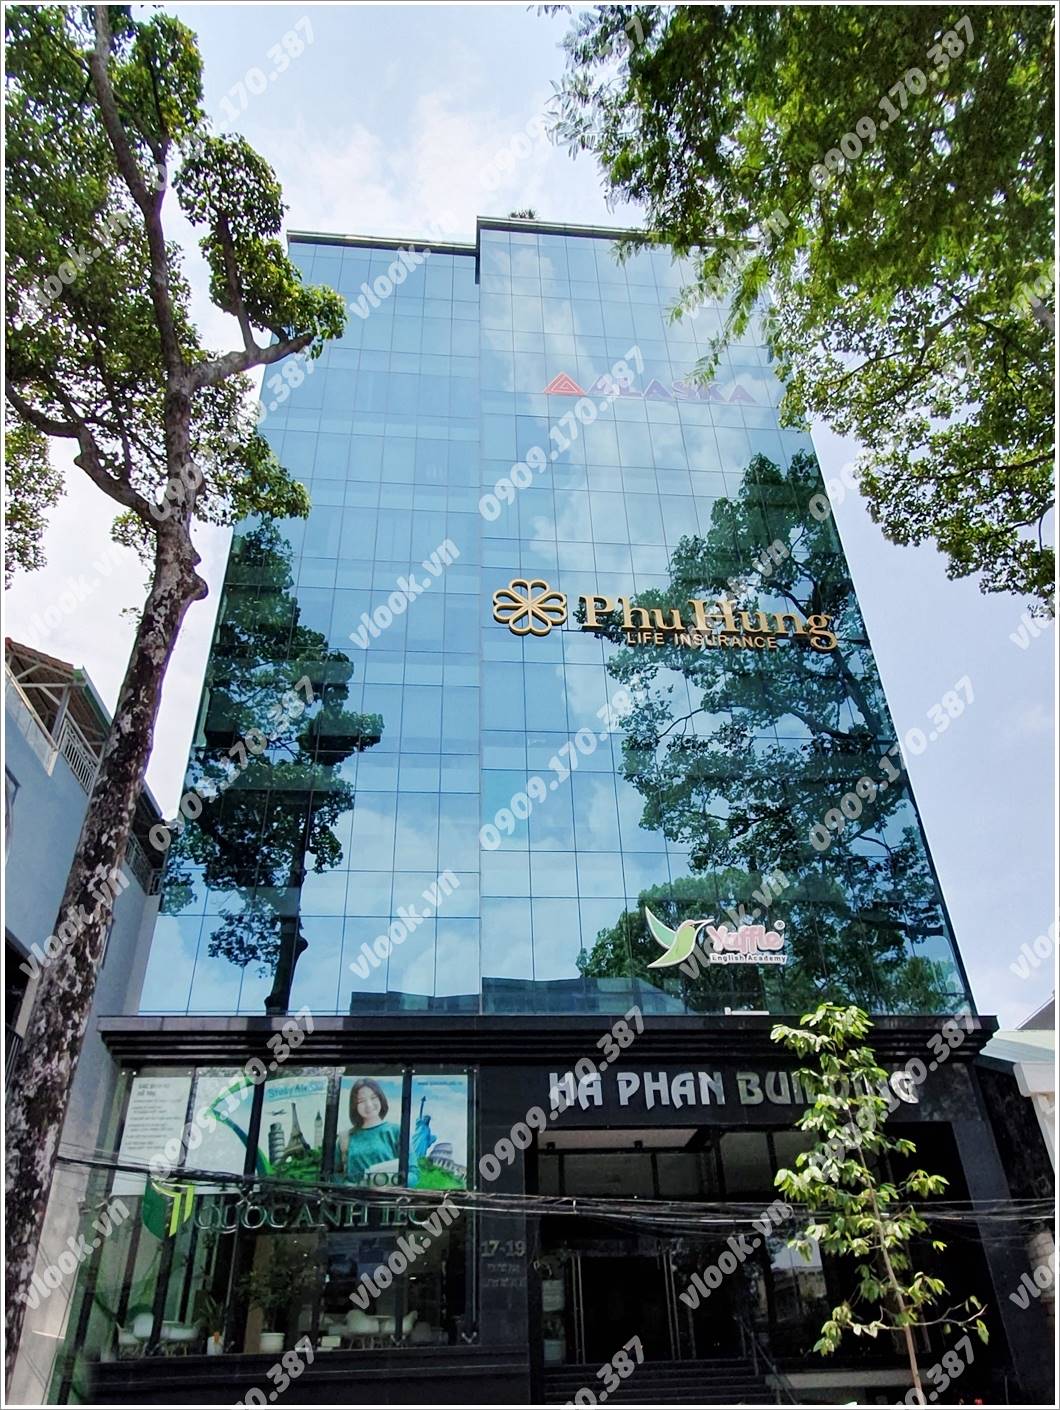 Mặt trước cao ốc cho thuê văn phòng Hà Phan Building, Cống Quỳnh, Quận 1, TPHCM - vlook.vn